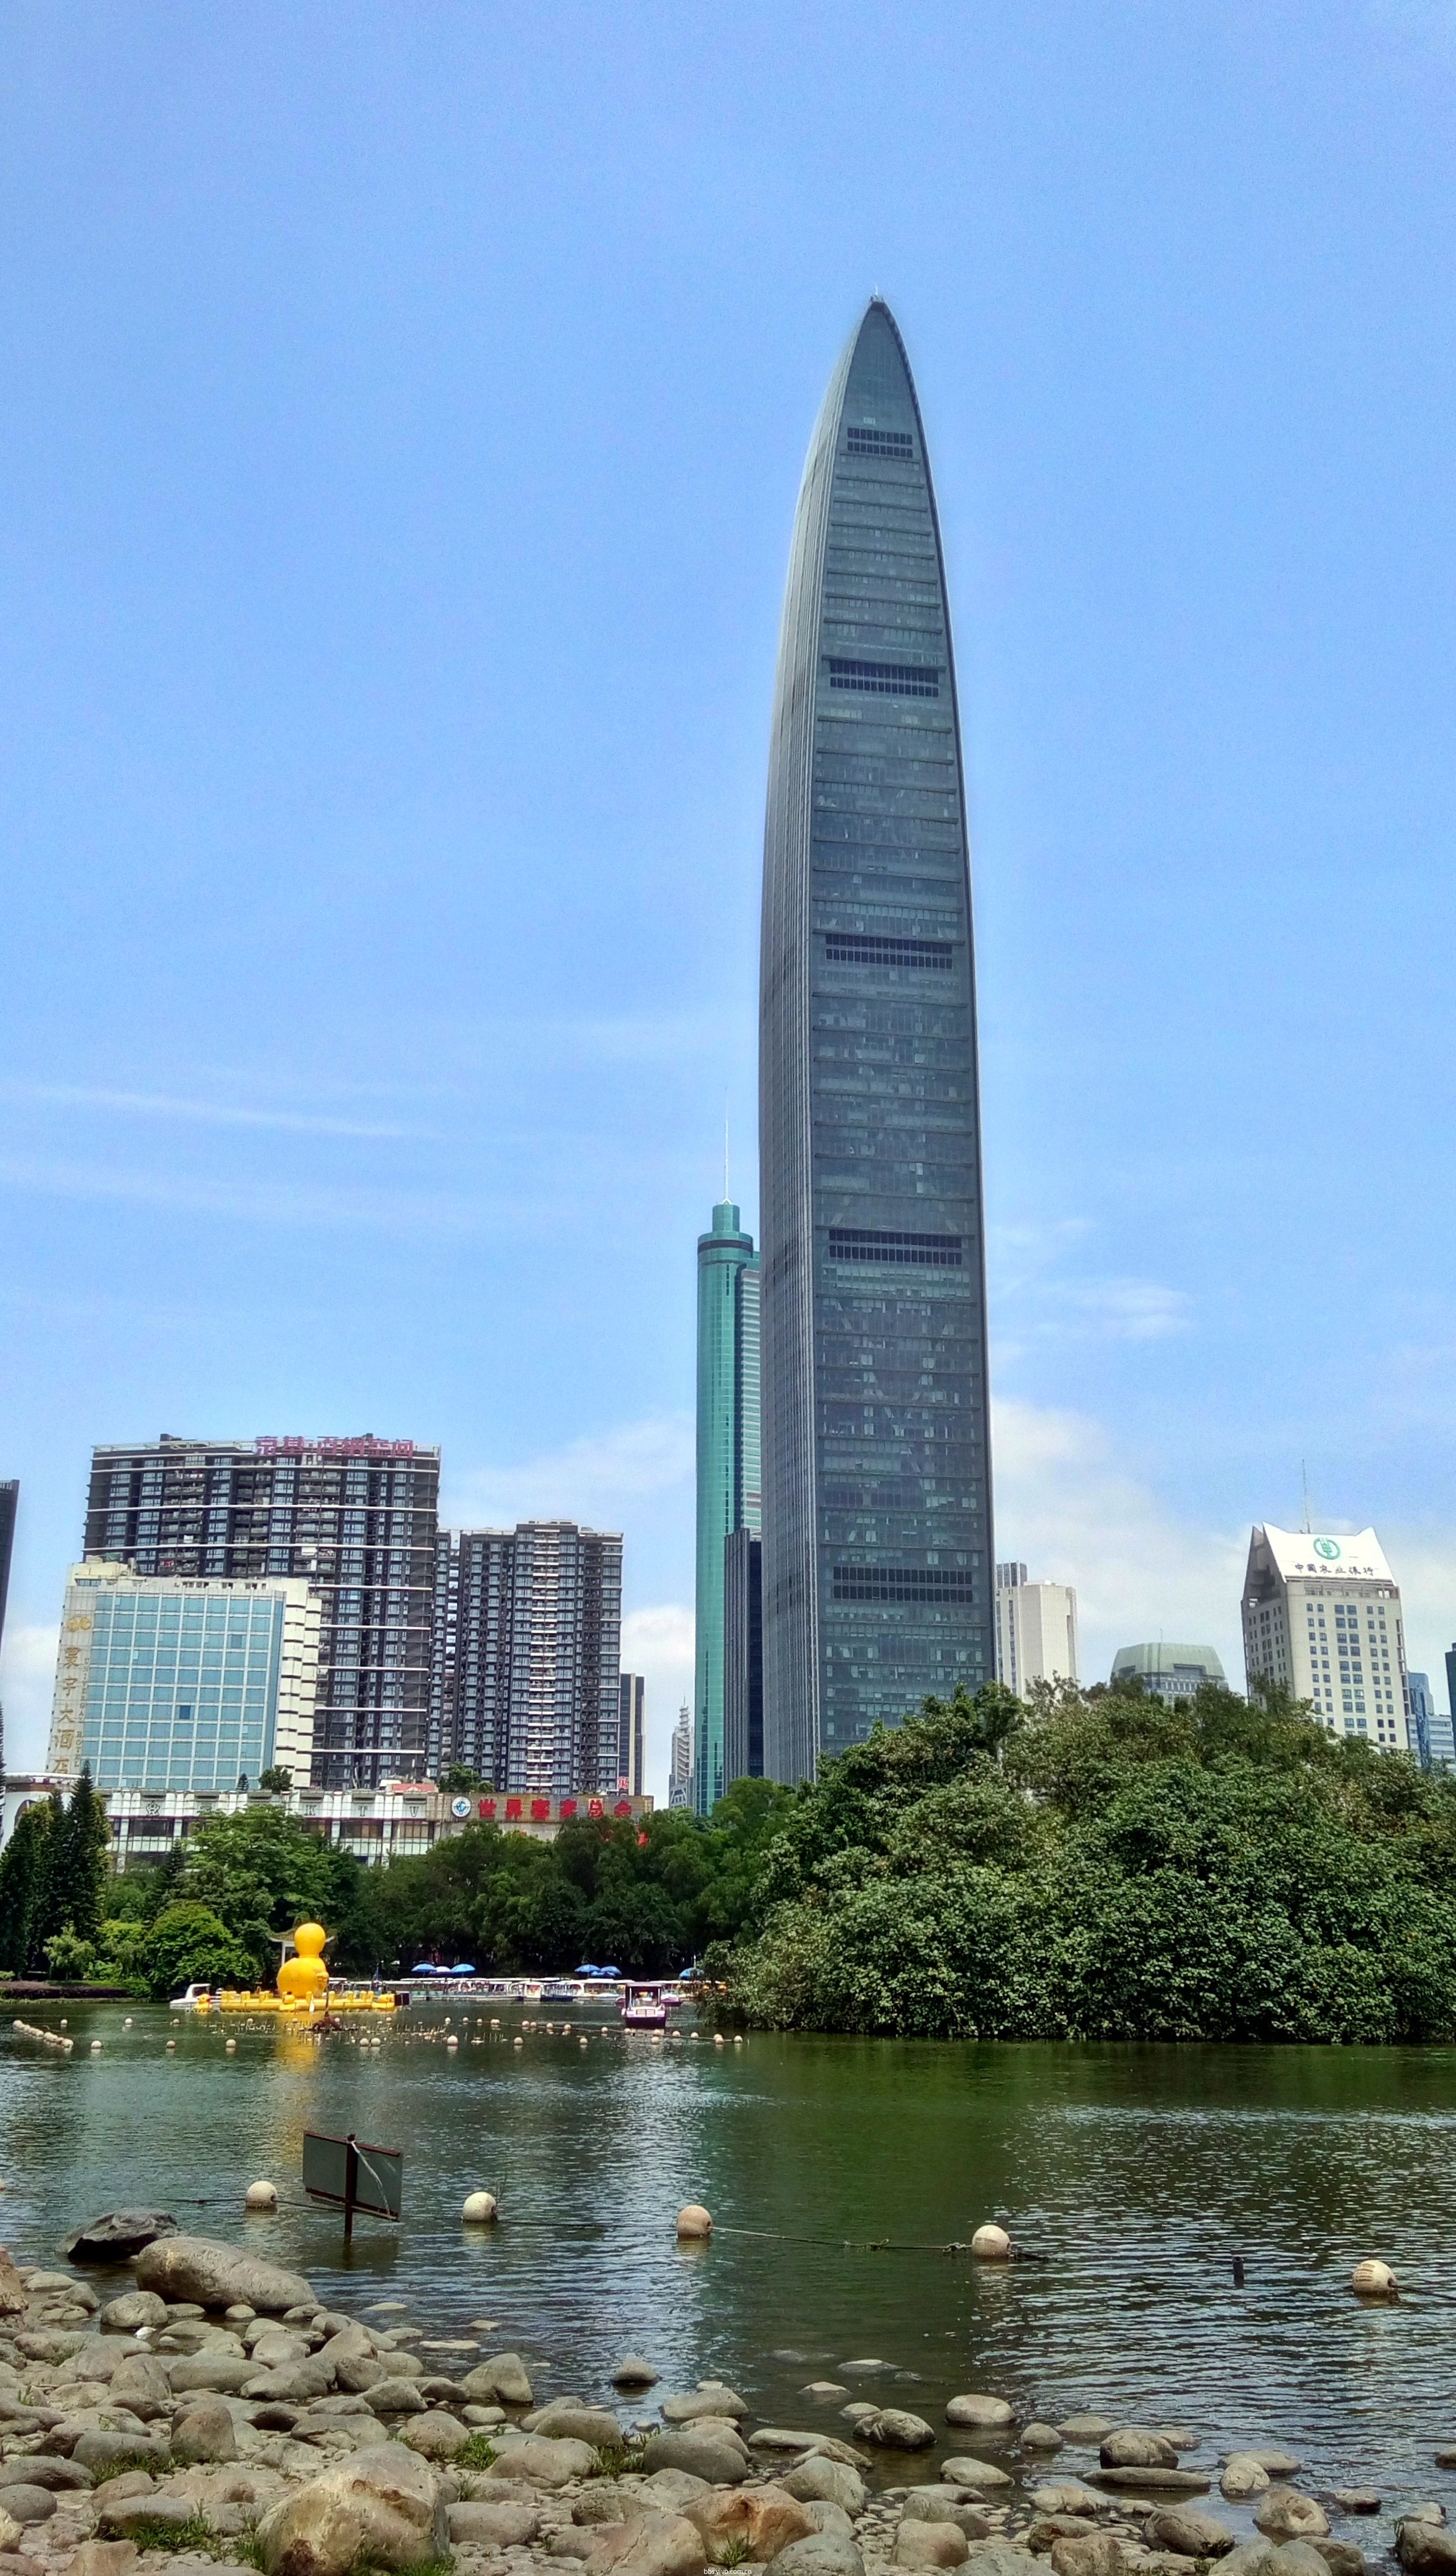 与之毗邻的是深圳标志性的建筑-京基大厦